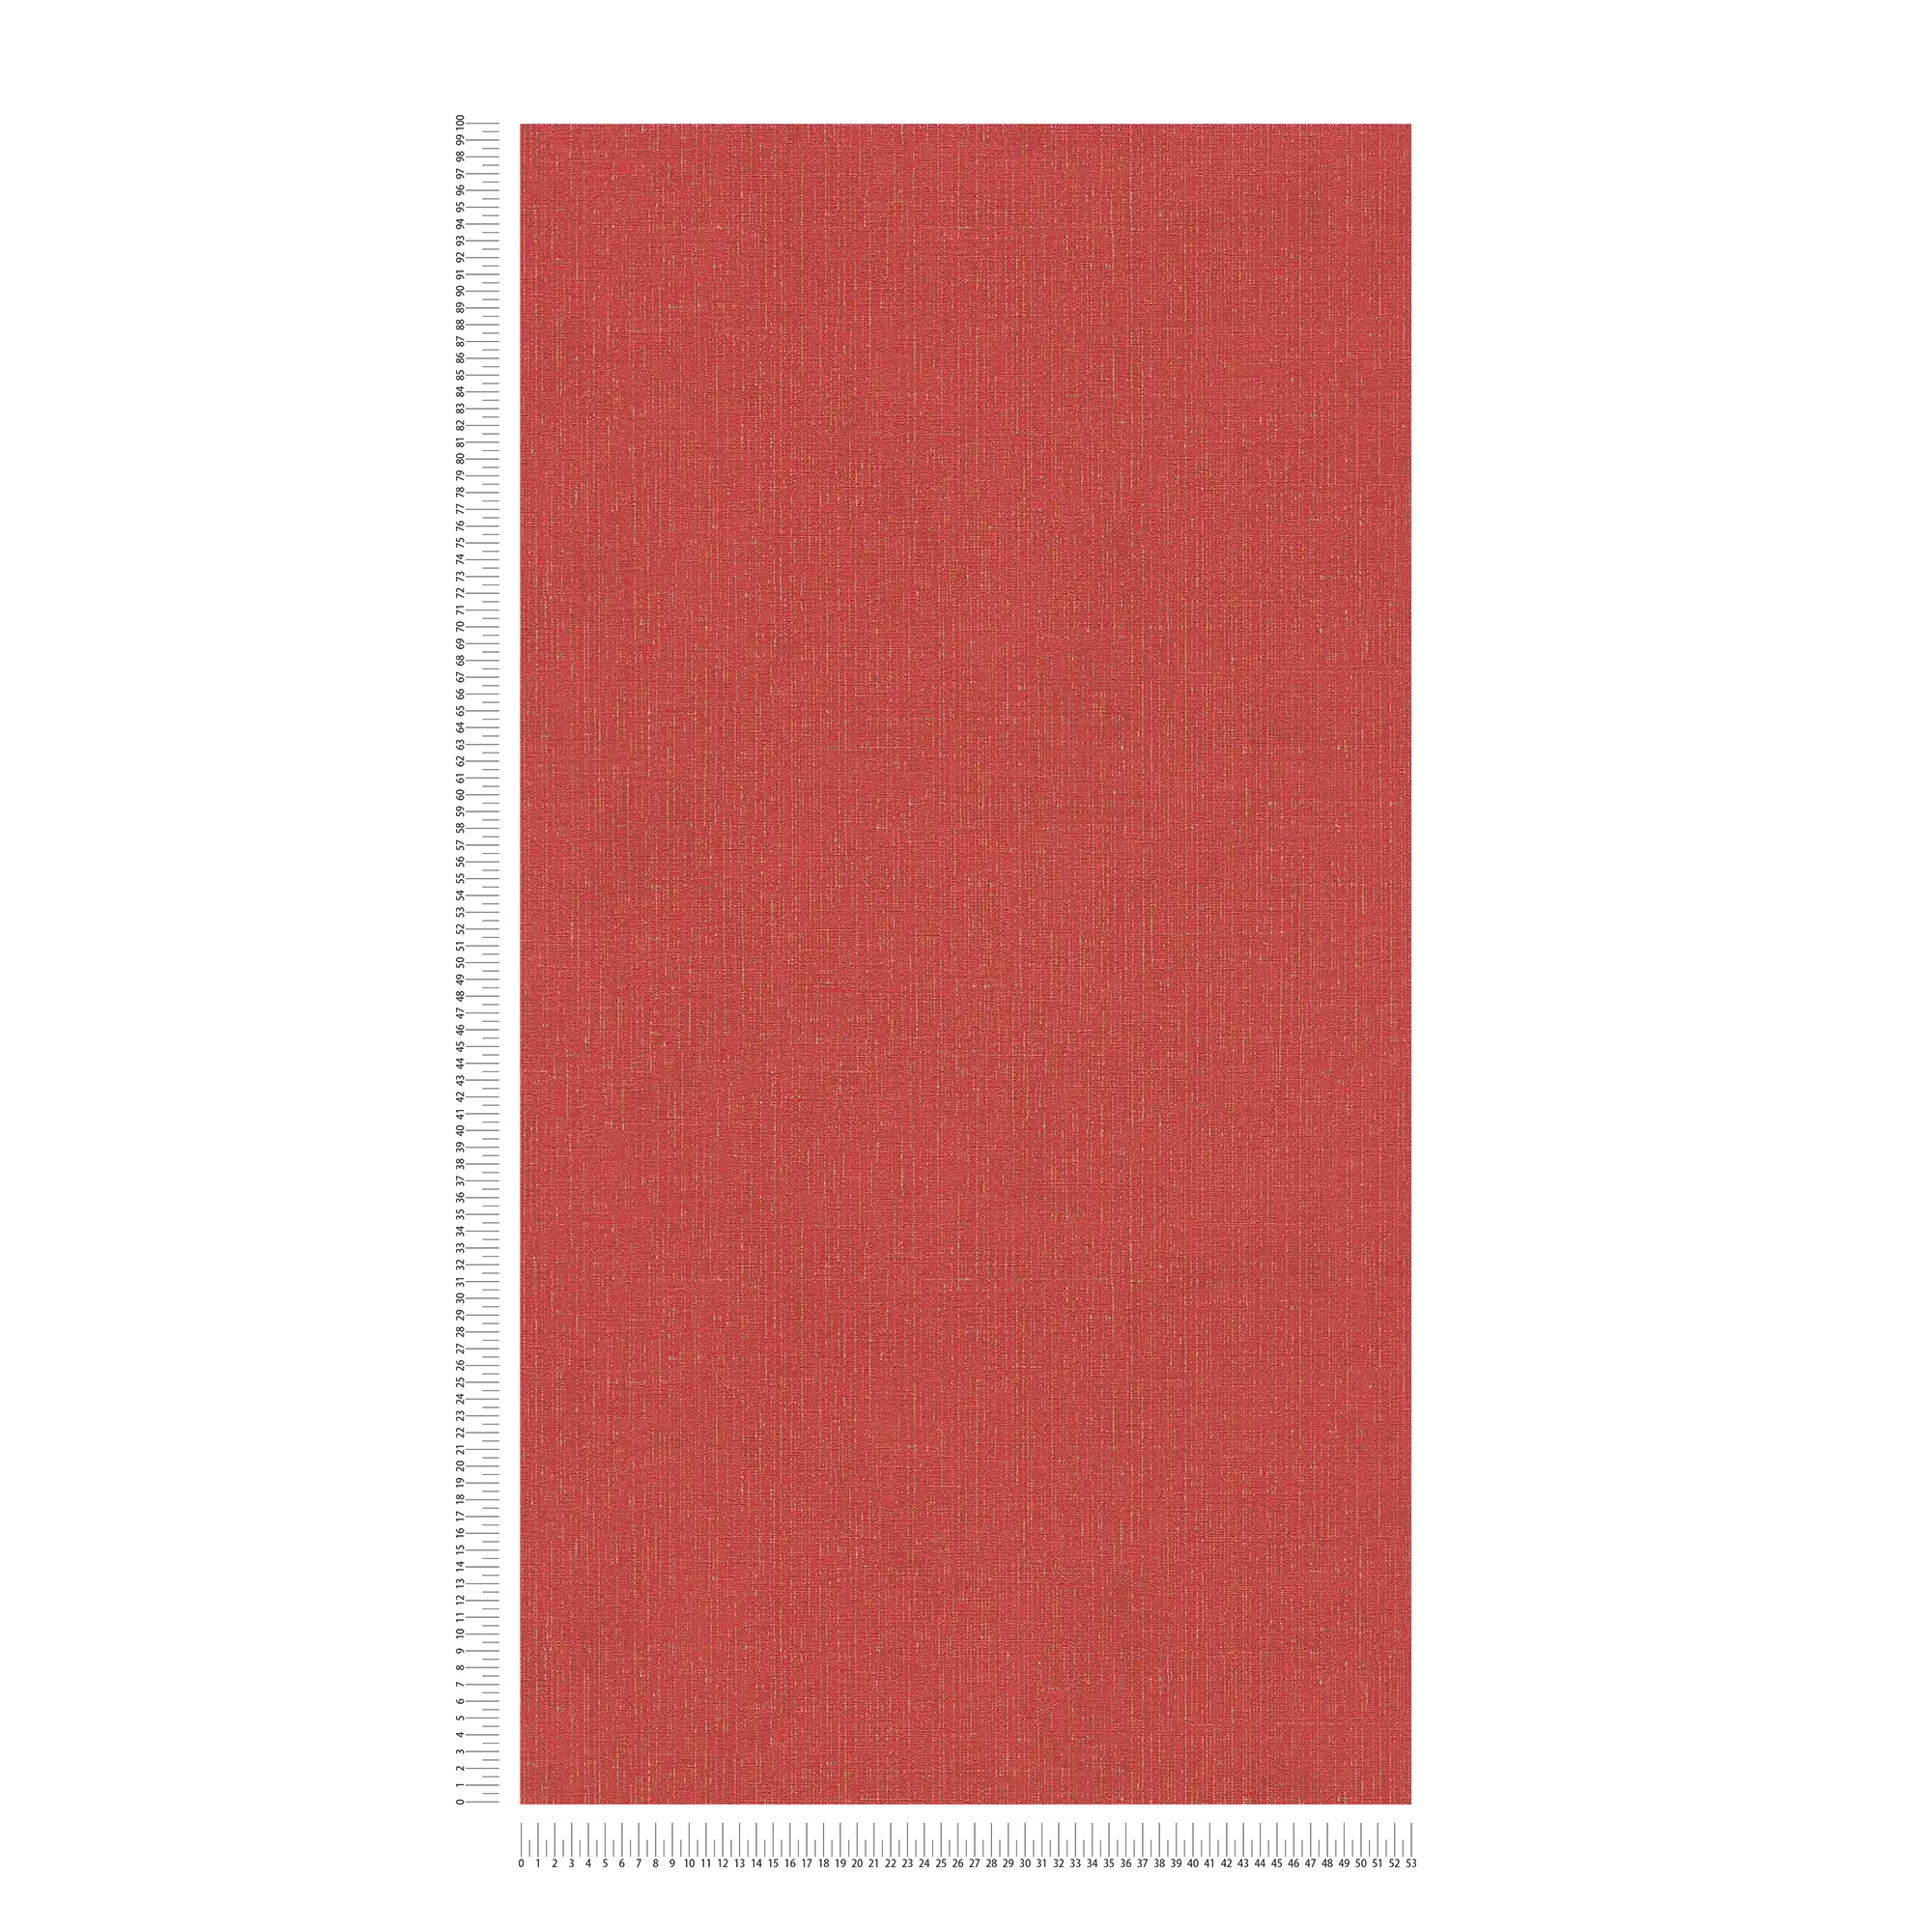             Carta da parati rossa screziata d'oro con ottica tessile - metallizzata, rossa
        